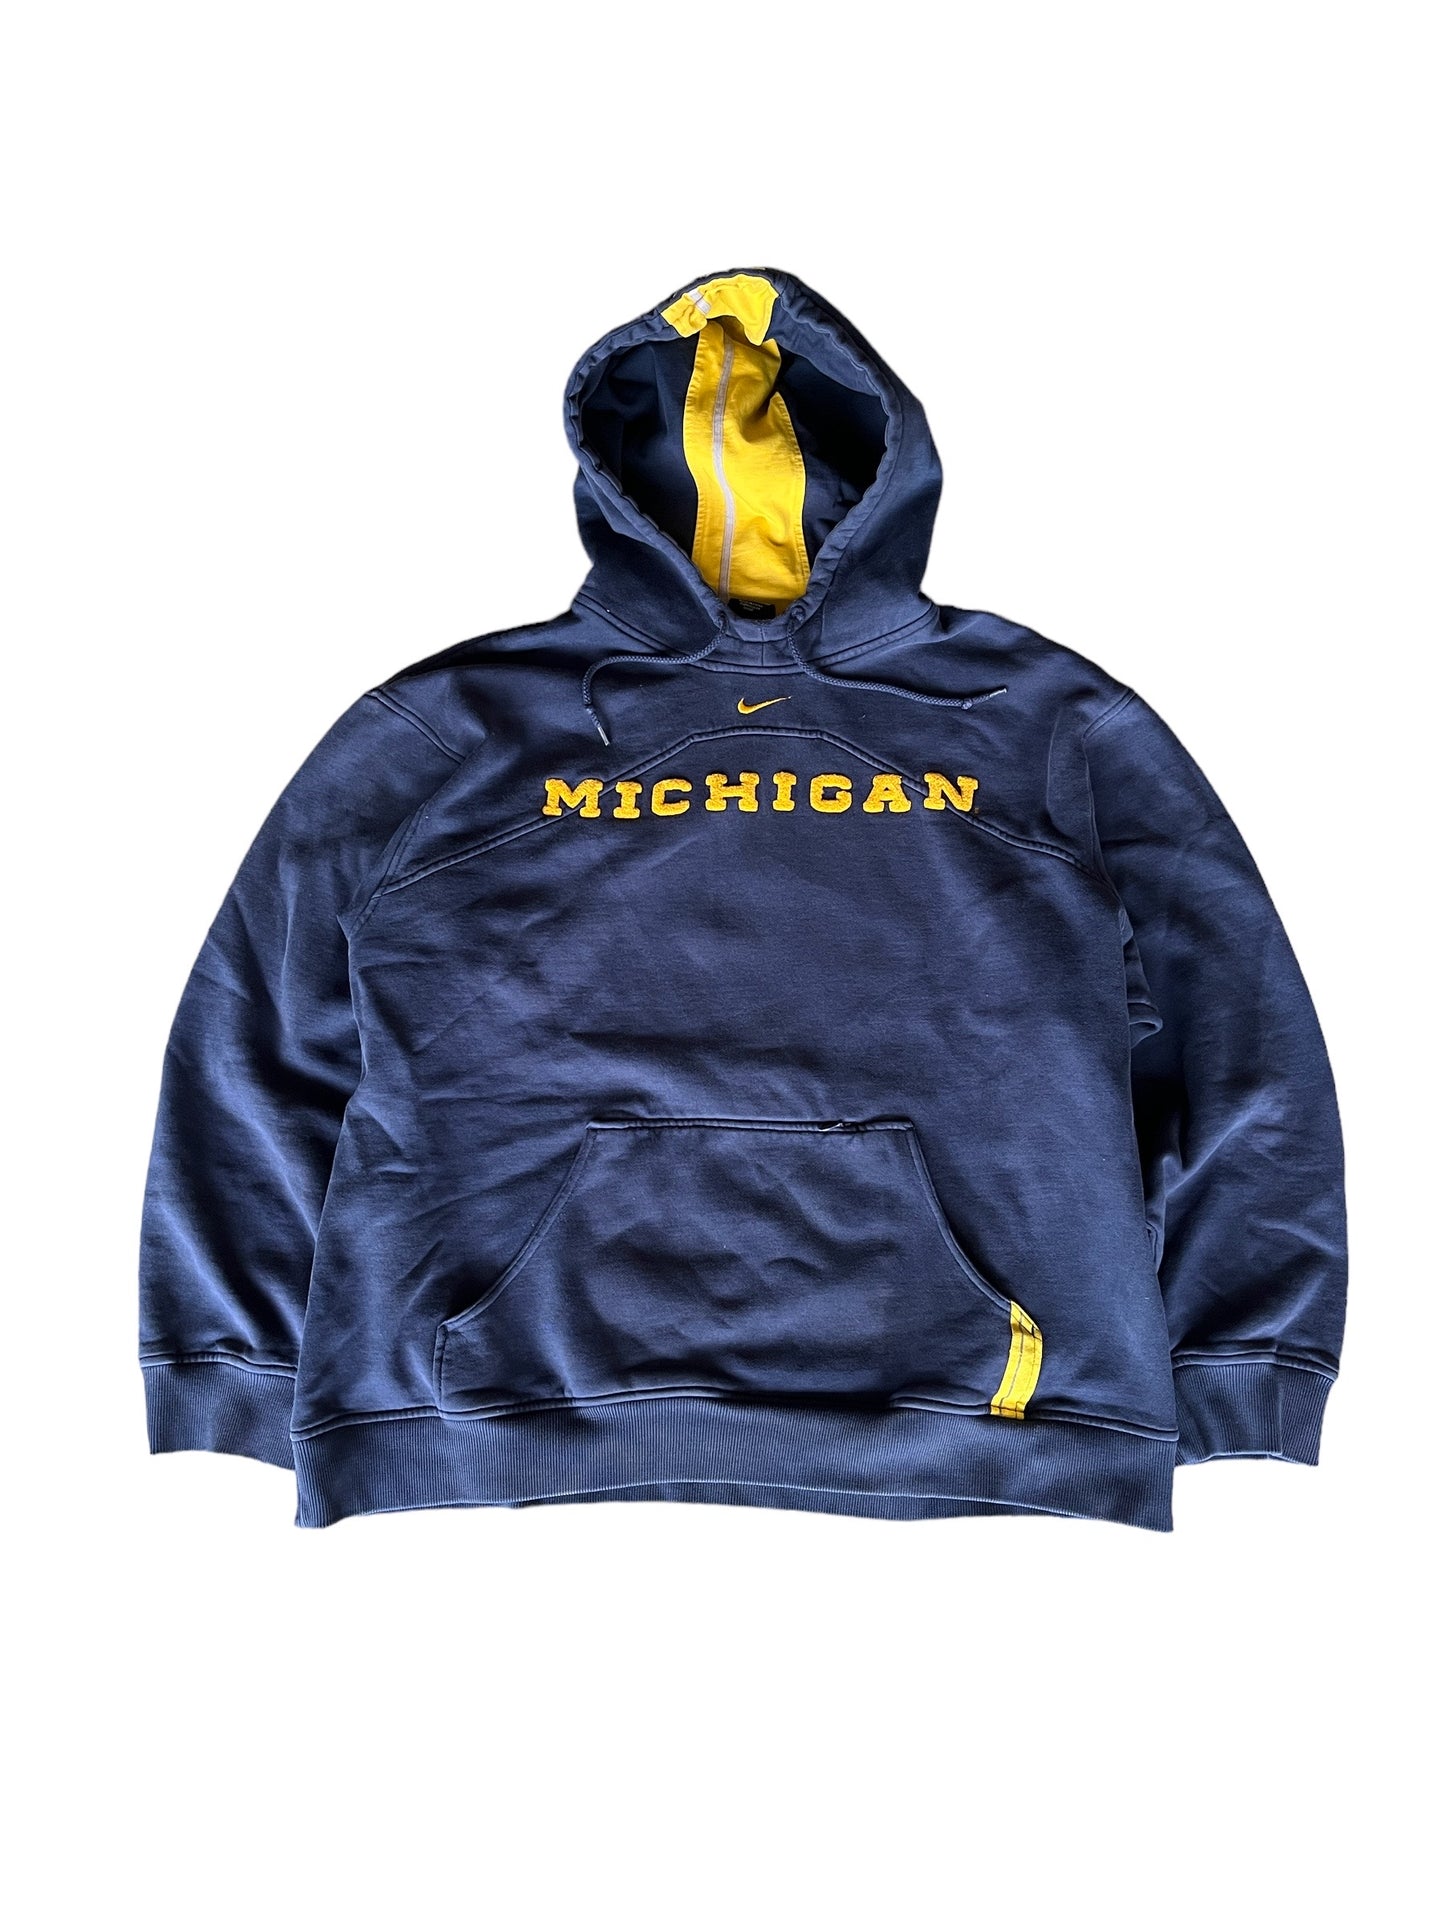 Vintage Michigan Wolverines Hoodie